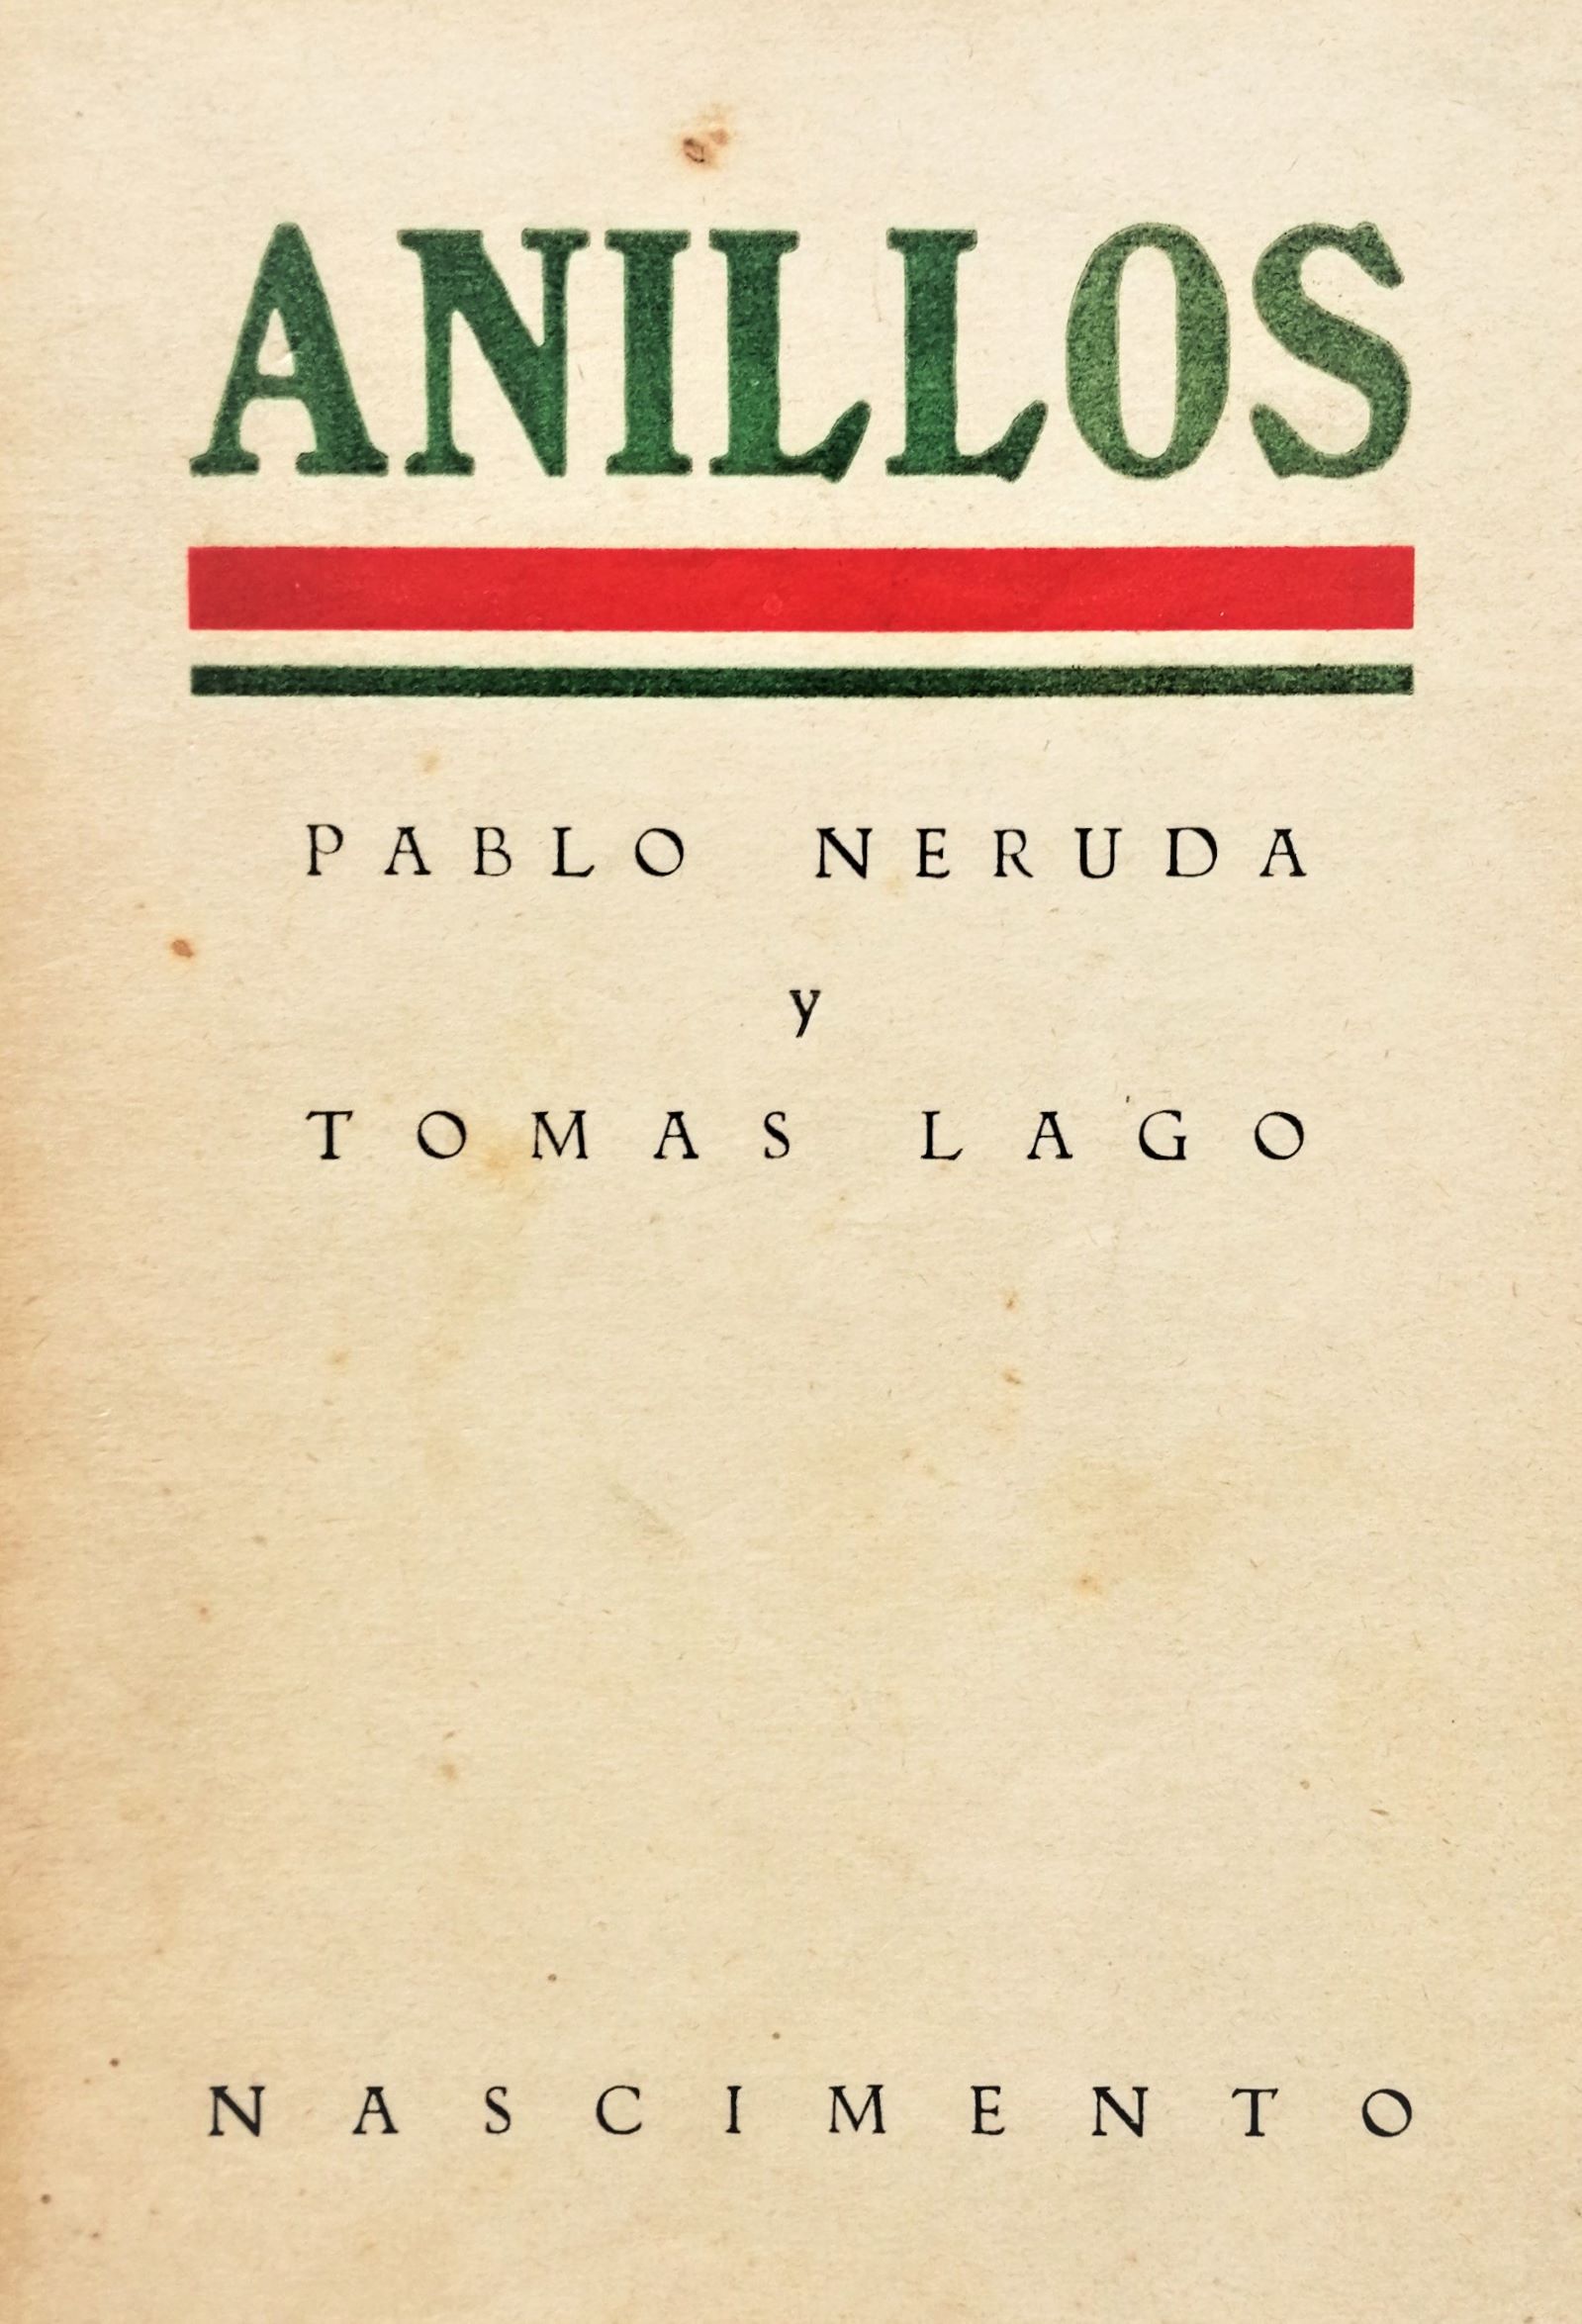 Pablo Neruda & Tomás Lagos - Anillos